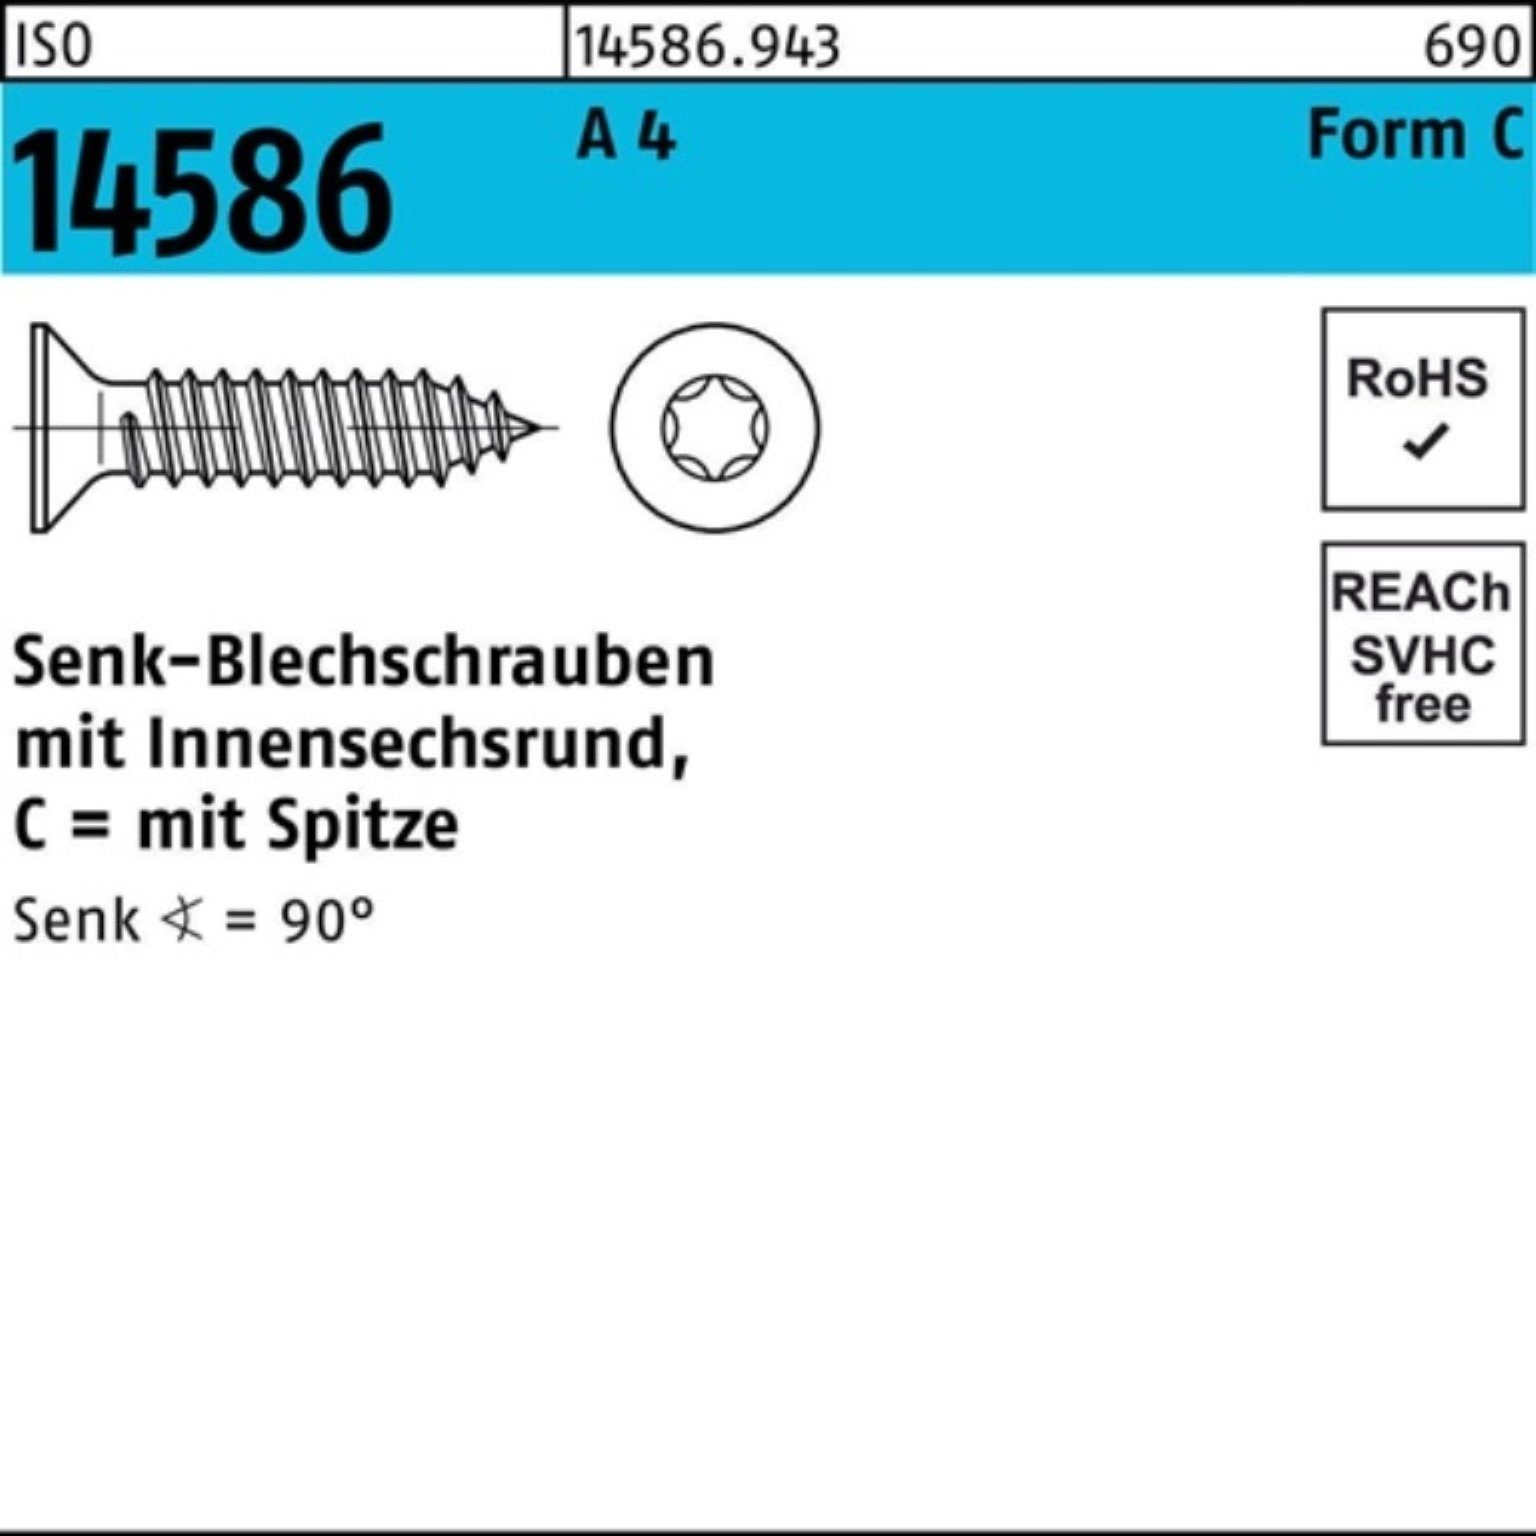 Schraube Reyher A Senkblechschraube 500er 14586 4 ISO ISR/Spitze 500 Pack 4,8x 9,5-T25